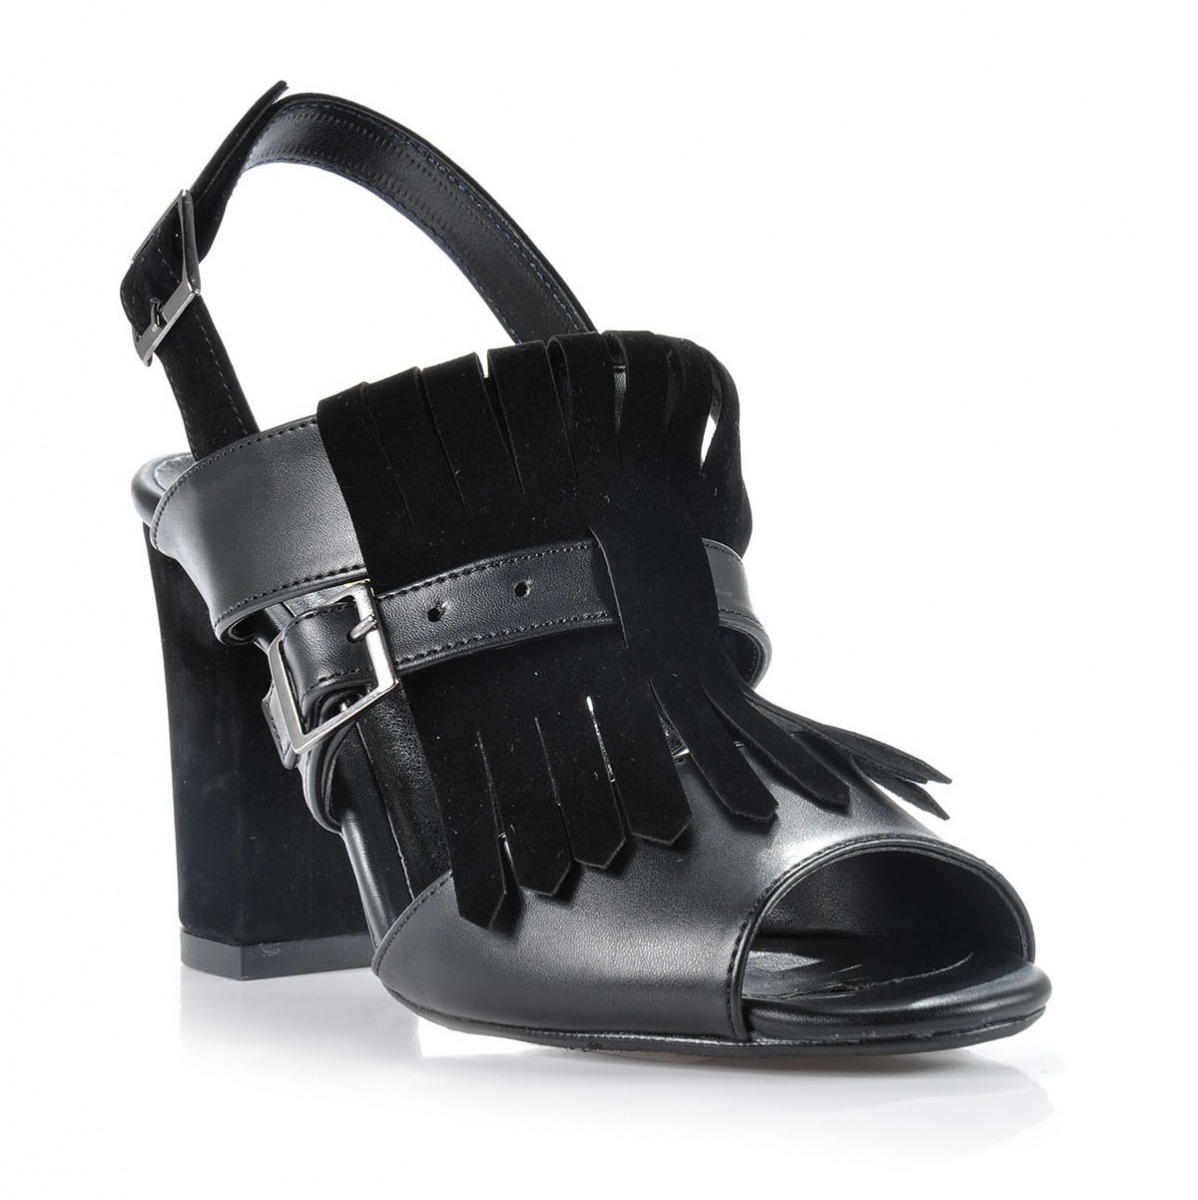 Flo Kadın  Siyah Klasik Topuklu Ayakkabı VZN-159Y. 2